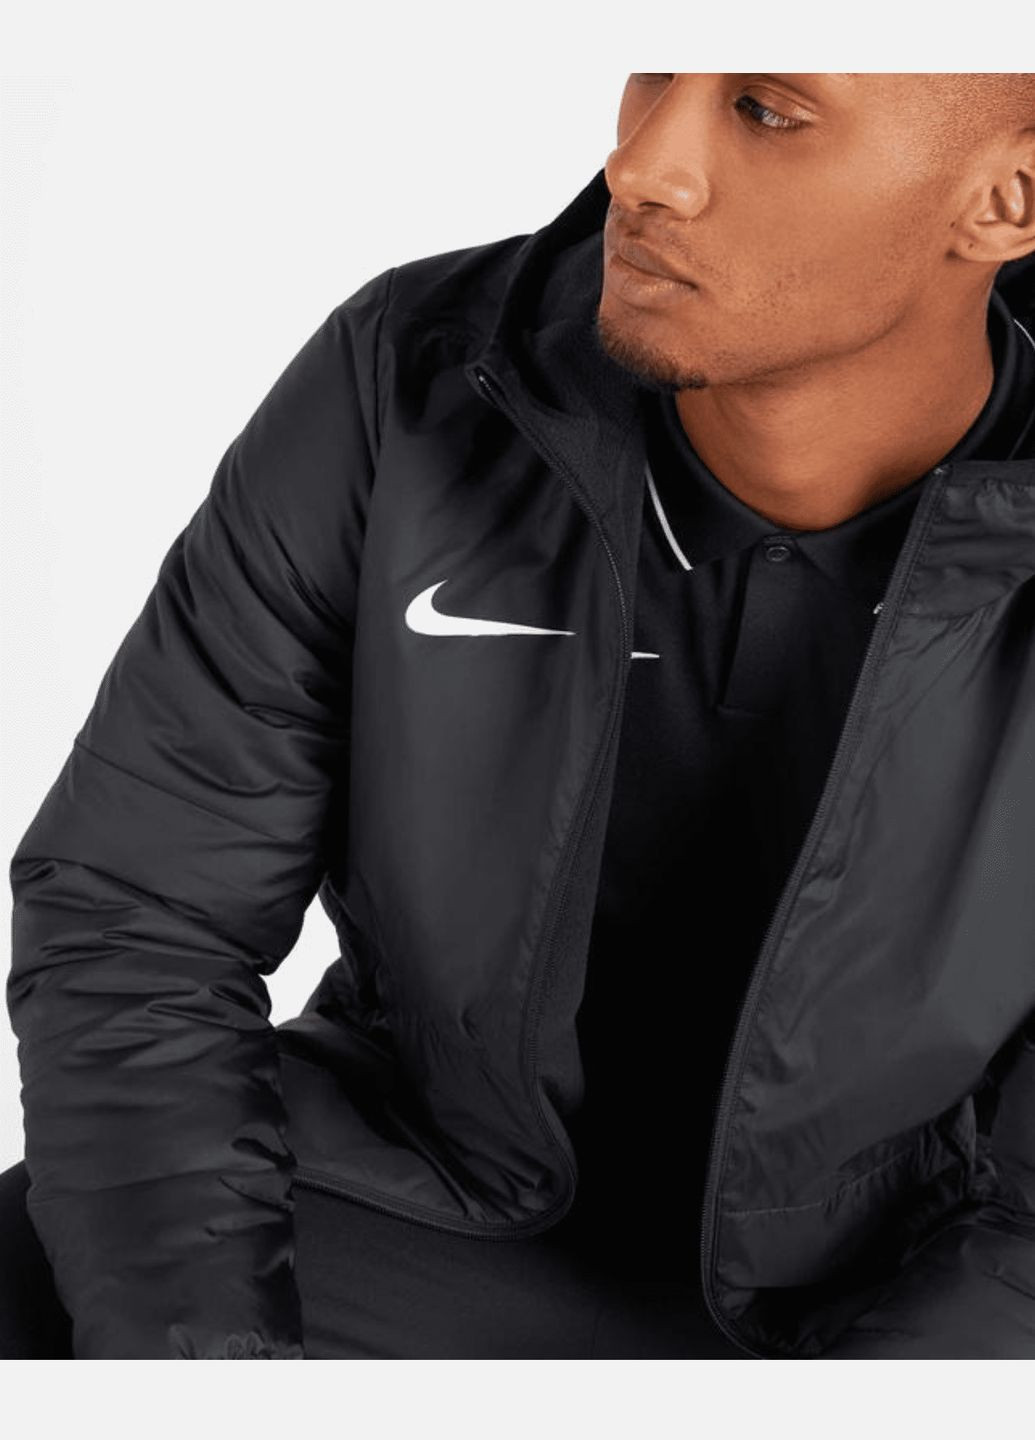 Черная демисезонная куртка (ветровка) мужская fall jacket park 20 cw6157-010 весна-осень черная Nike